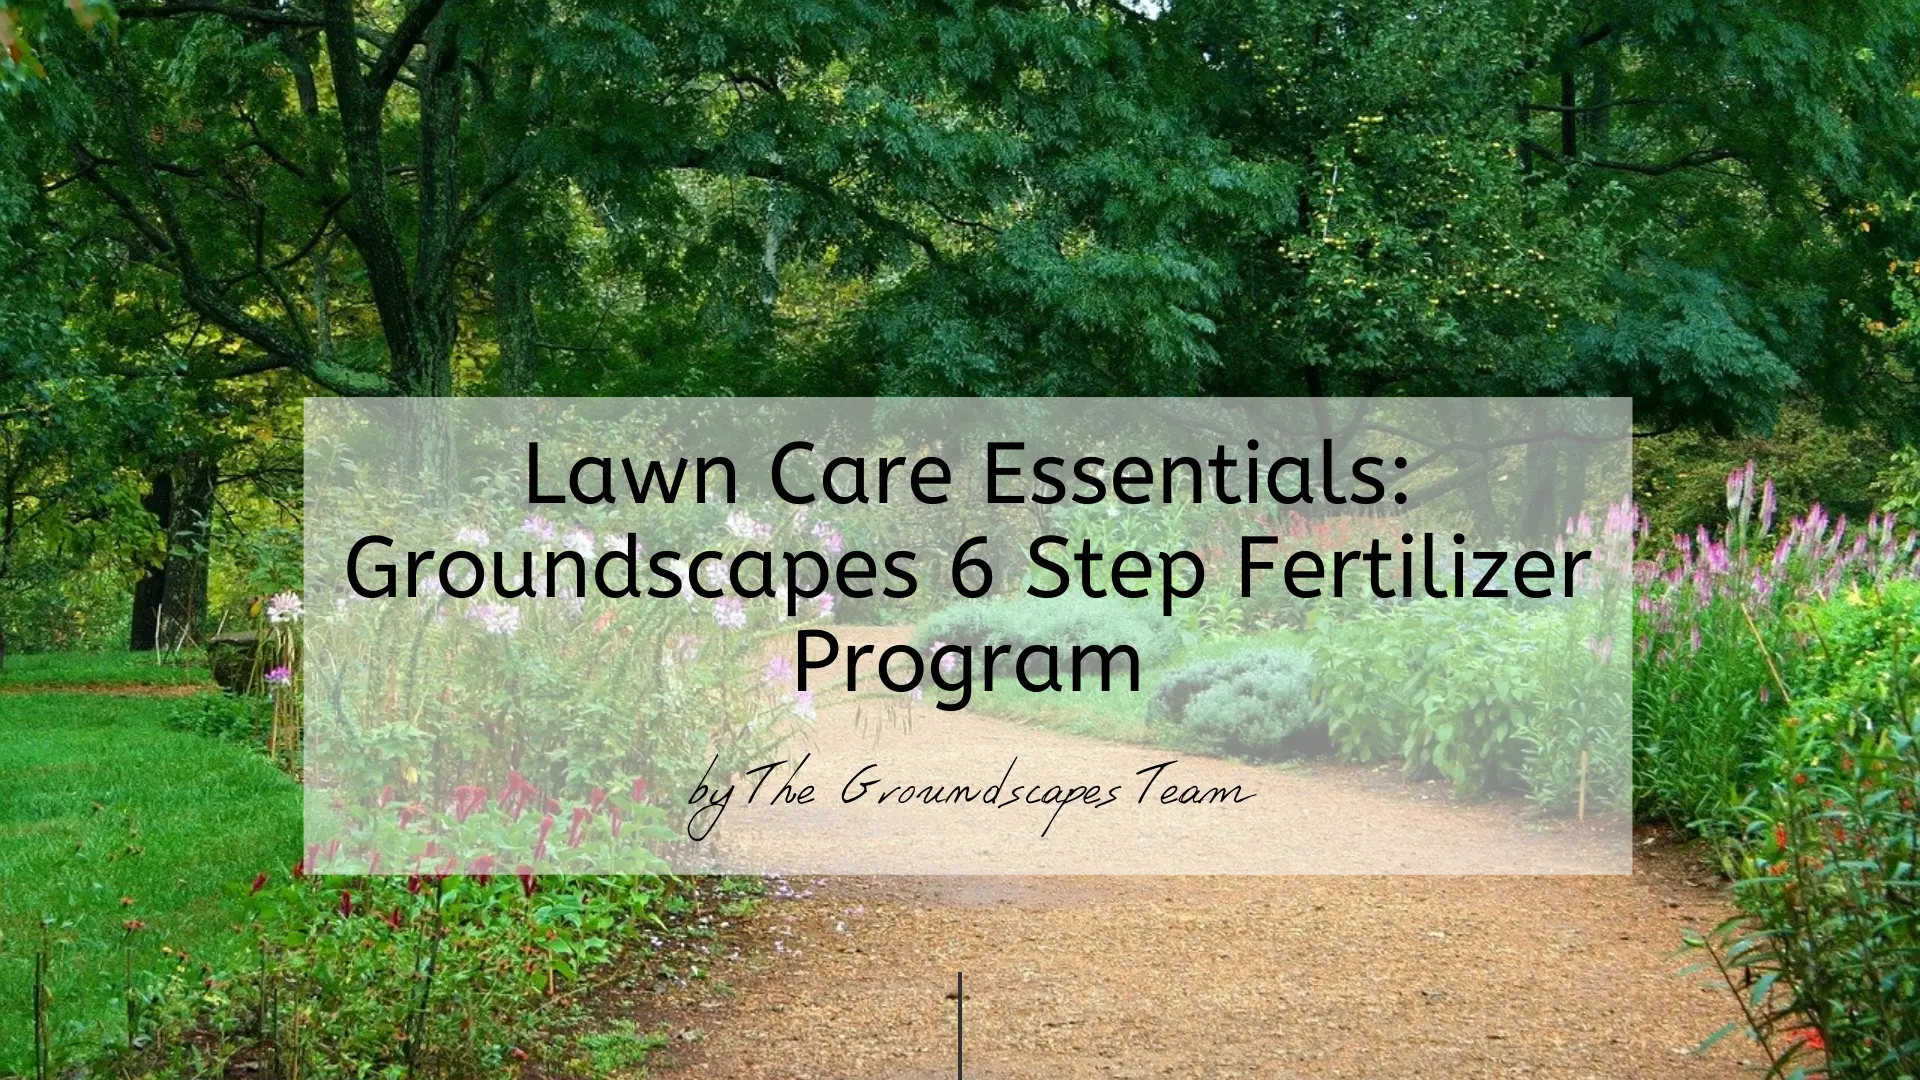 Lawn Care Essentials: Groundscapes 6 Step Fertilizer Program